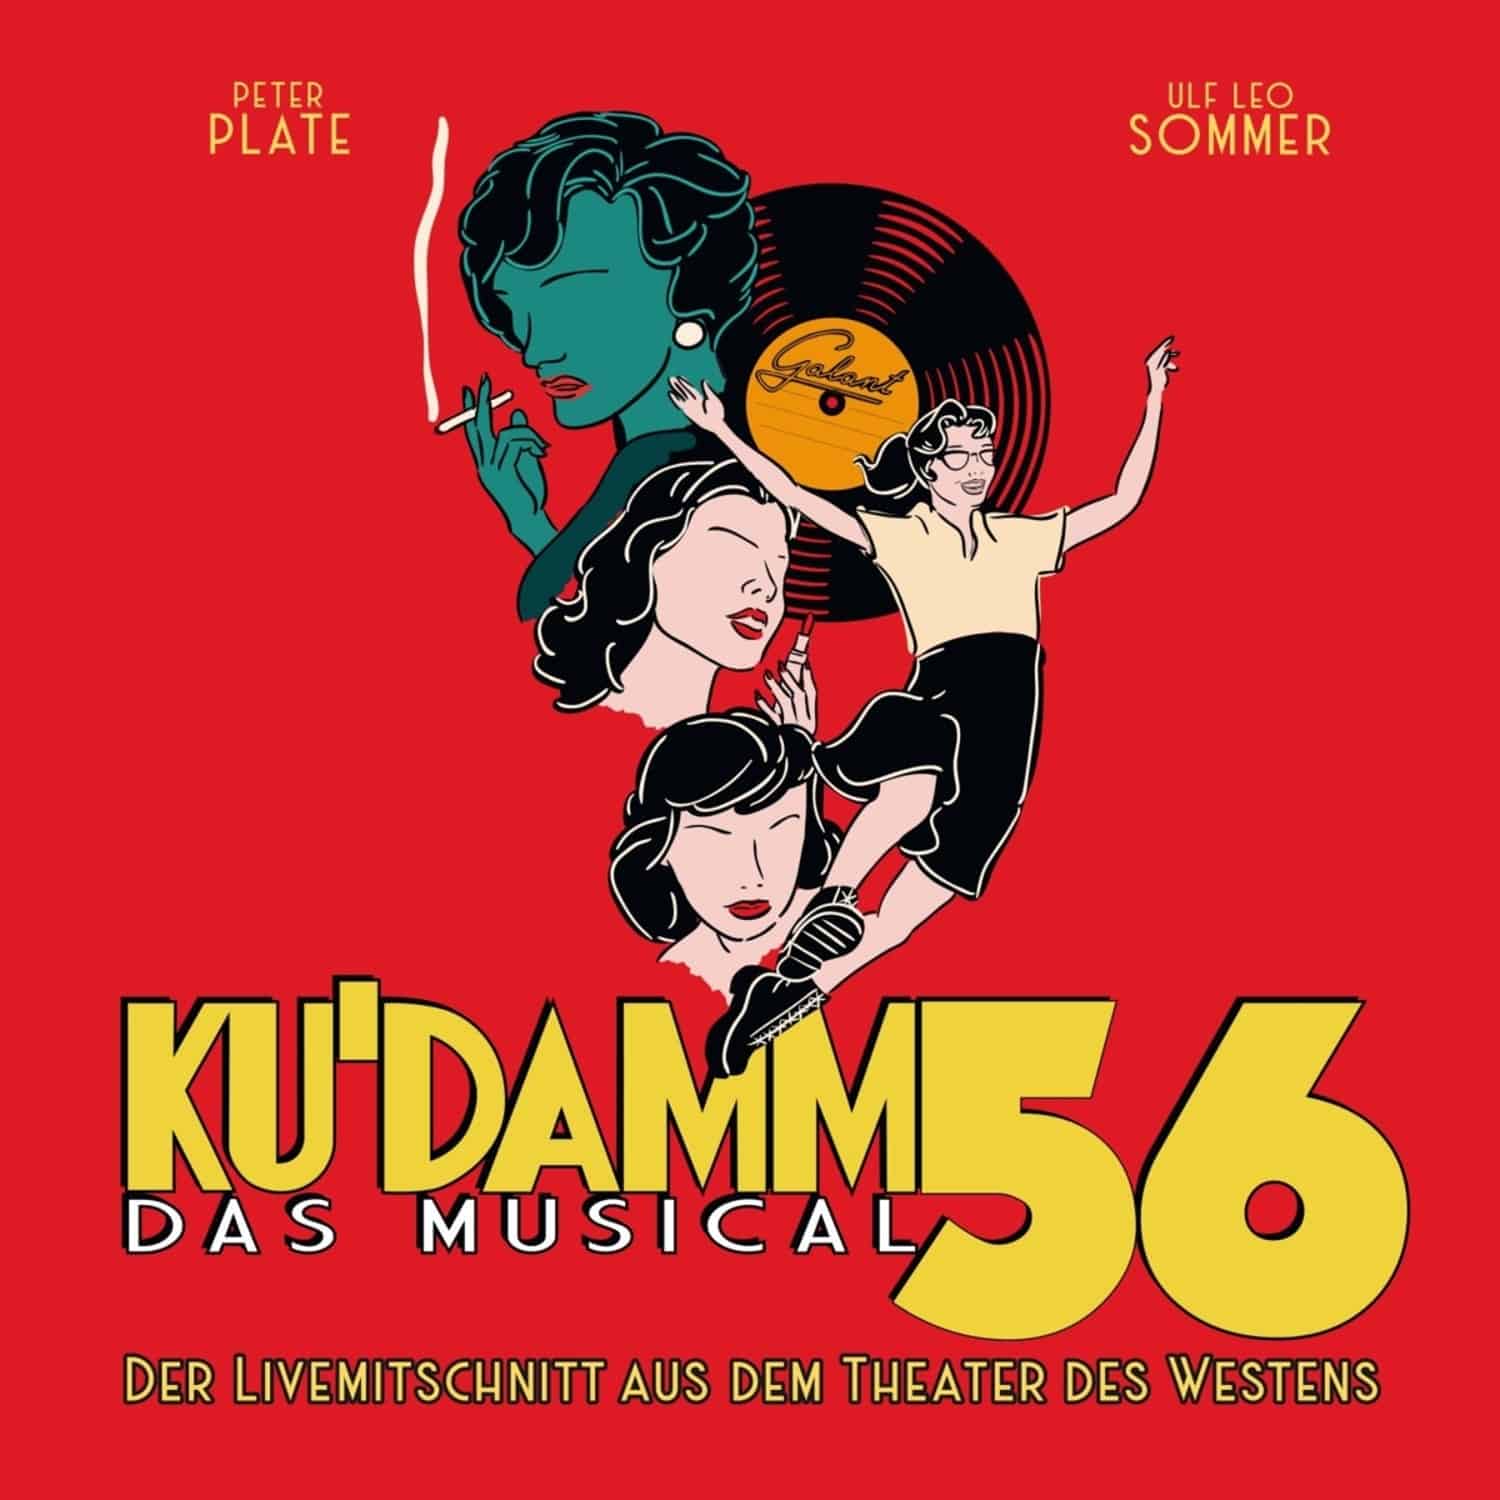 Peter Plate & Ulf Leo Sommer - KU DAMM 56:DAS MUSICAL